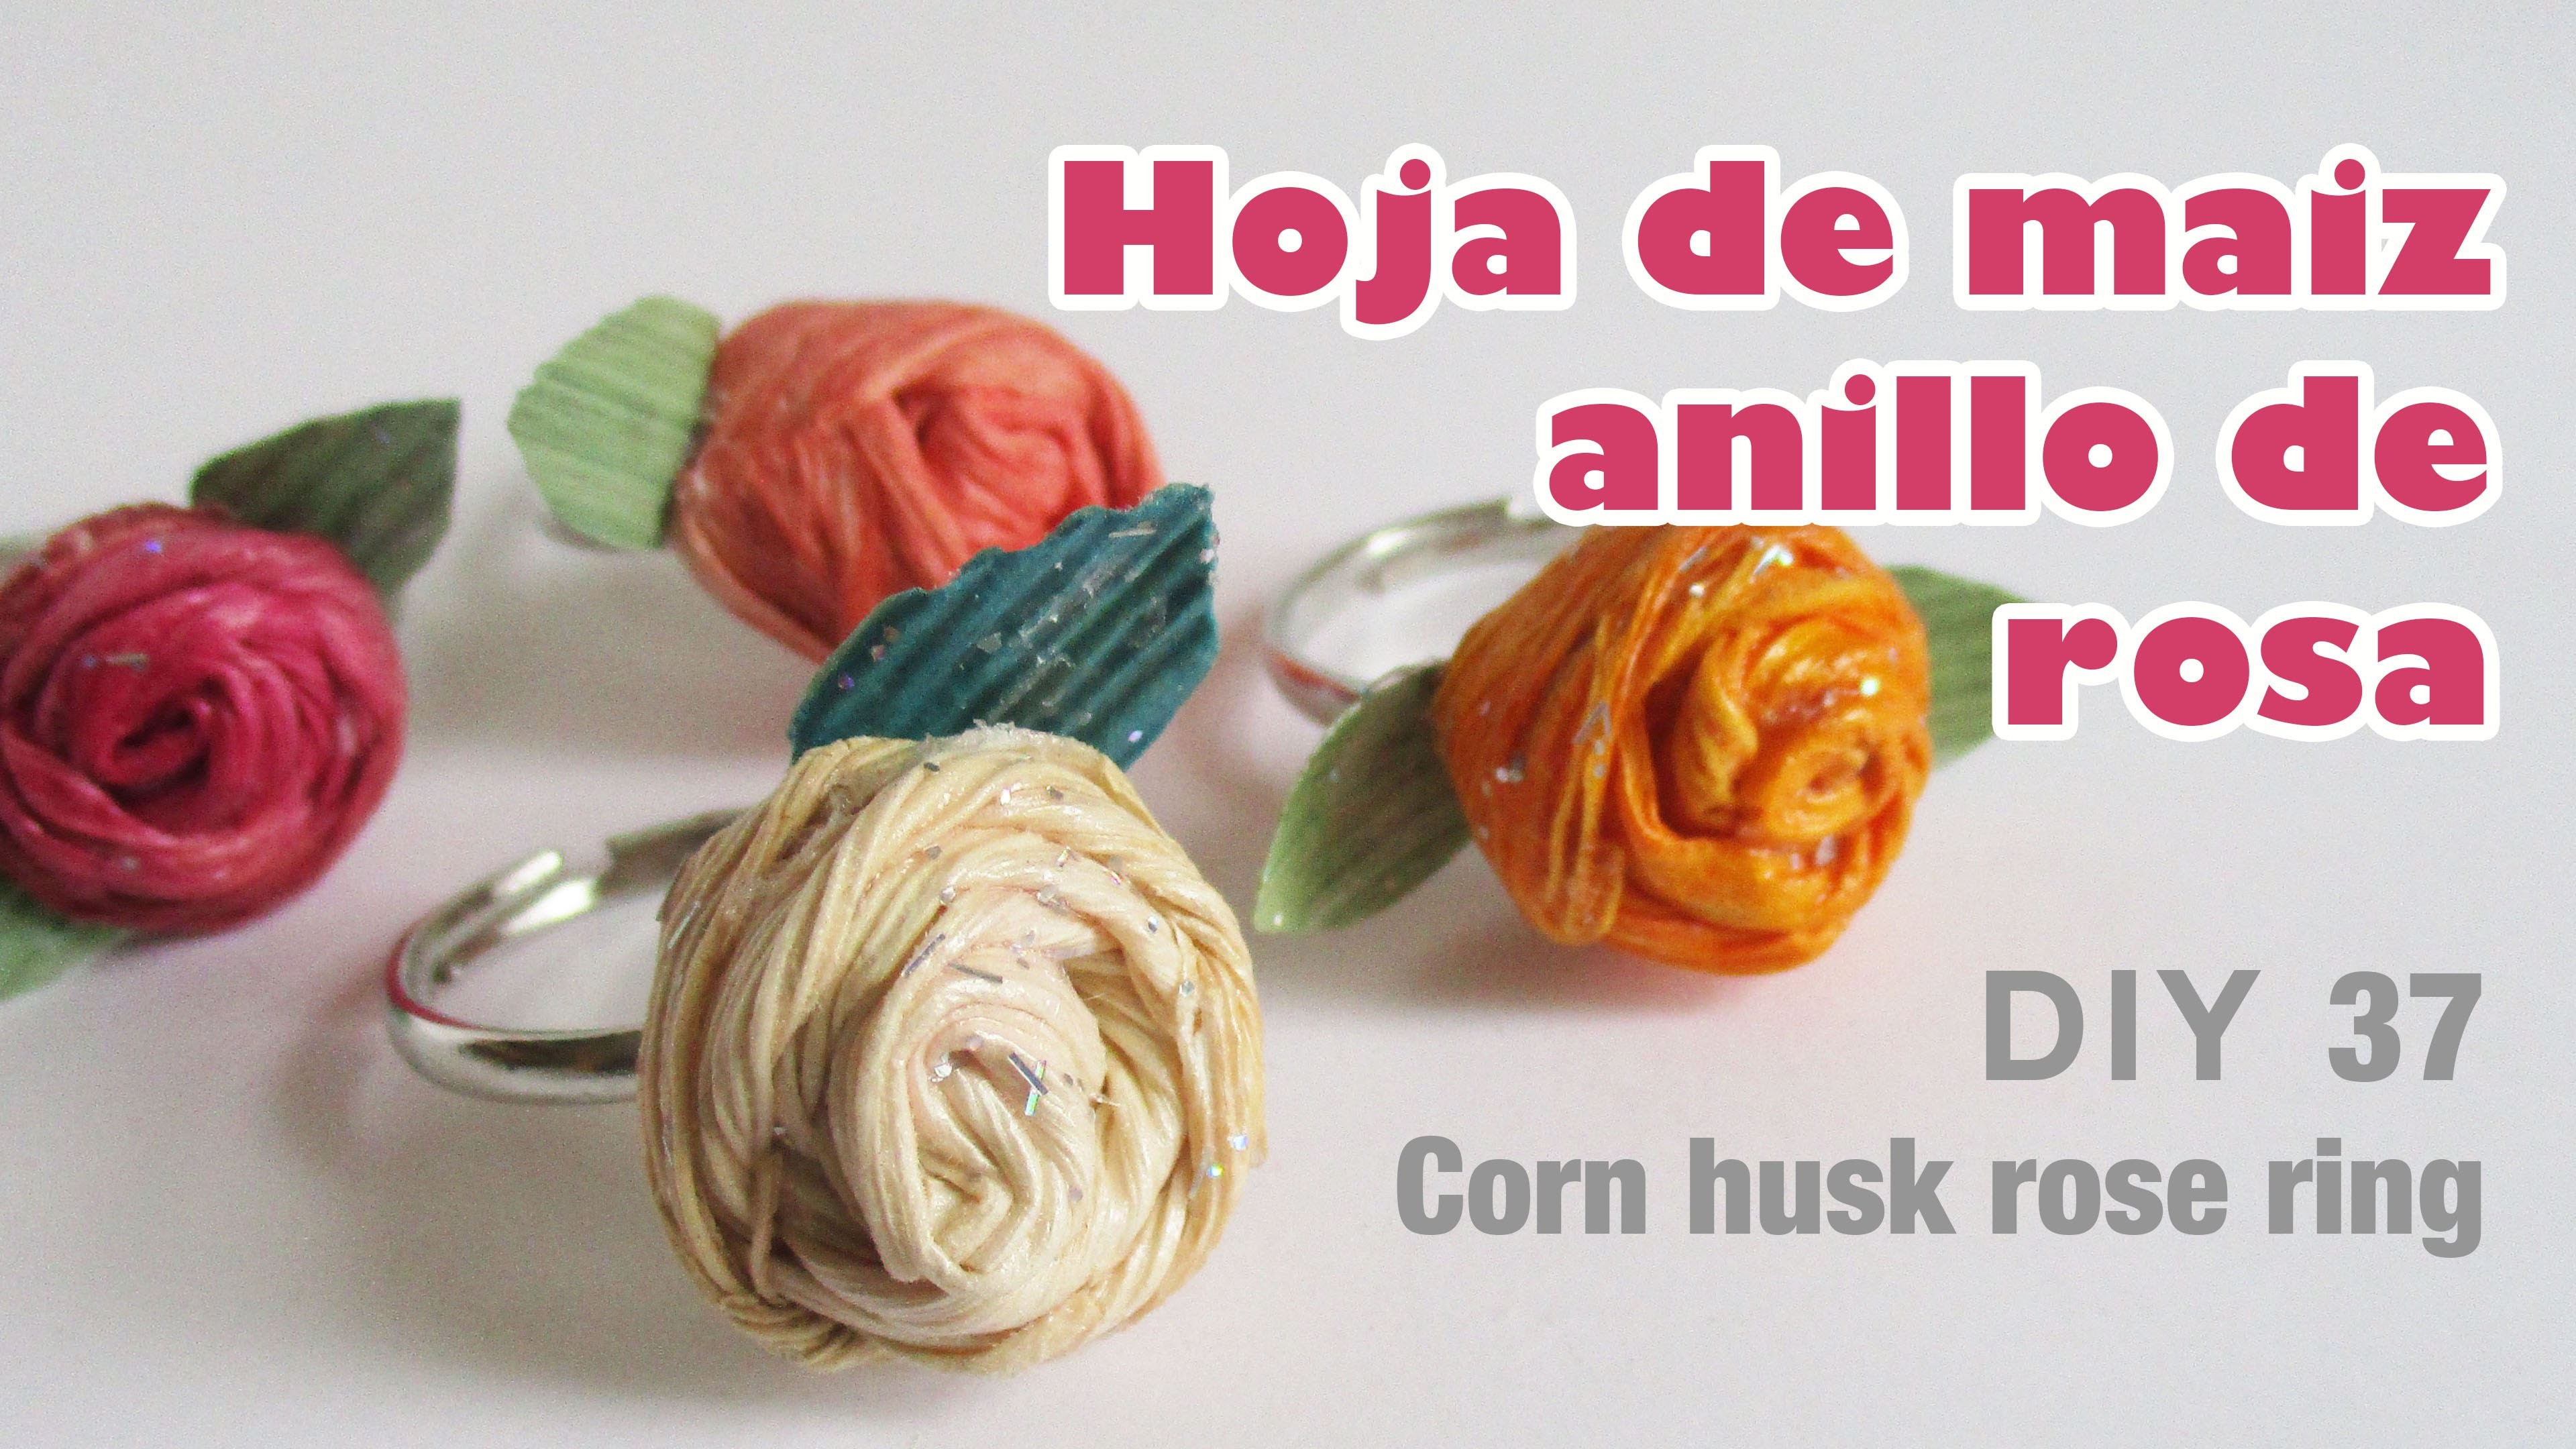 Como hacer flor con hoja de maiz 37 anillo de rosa. how to make corn husk ring